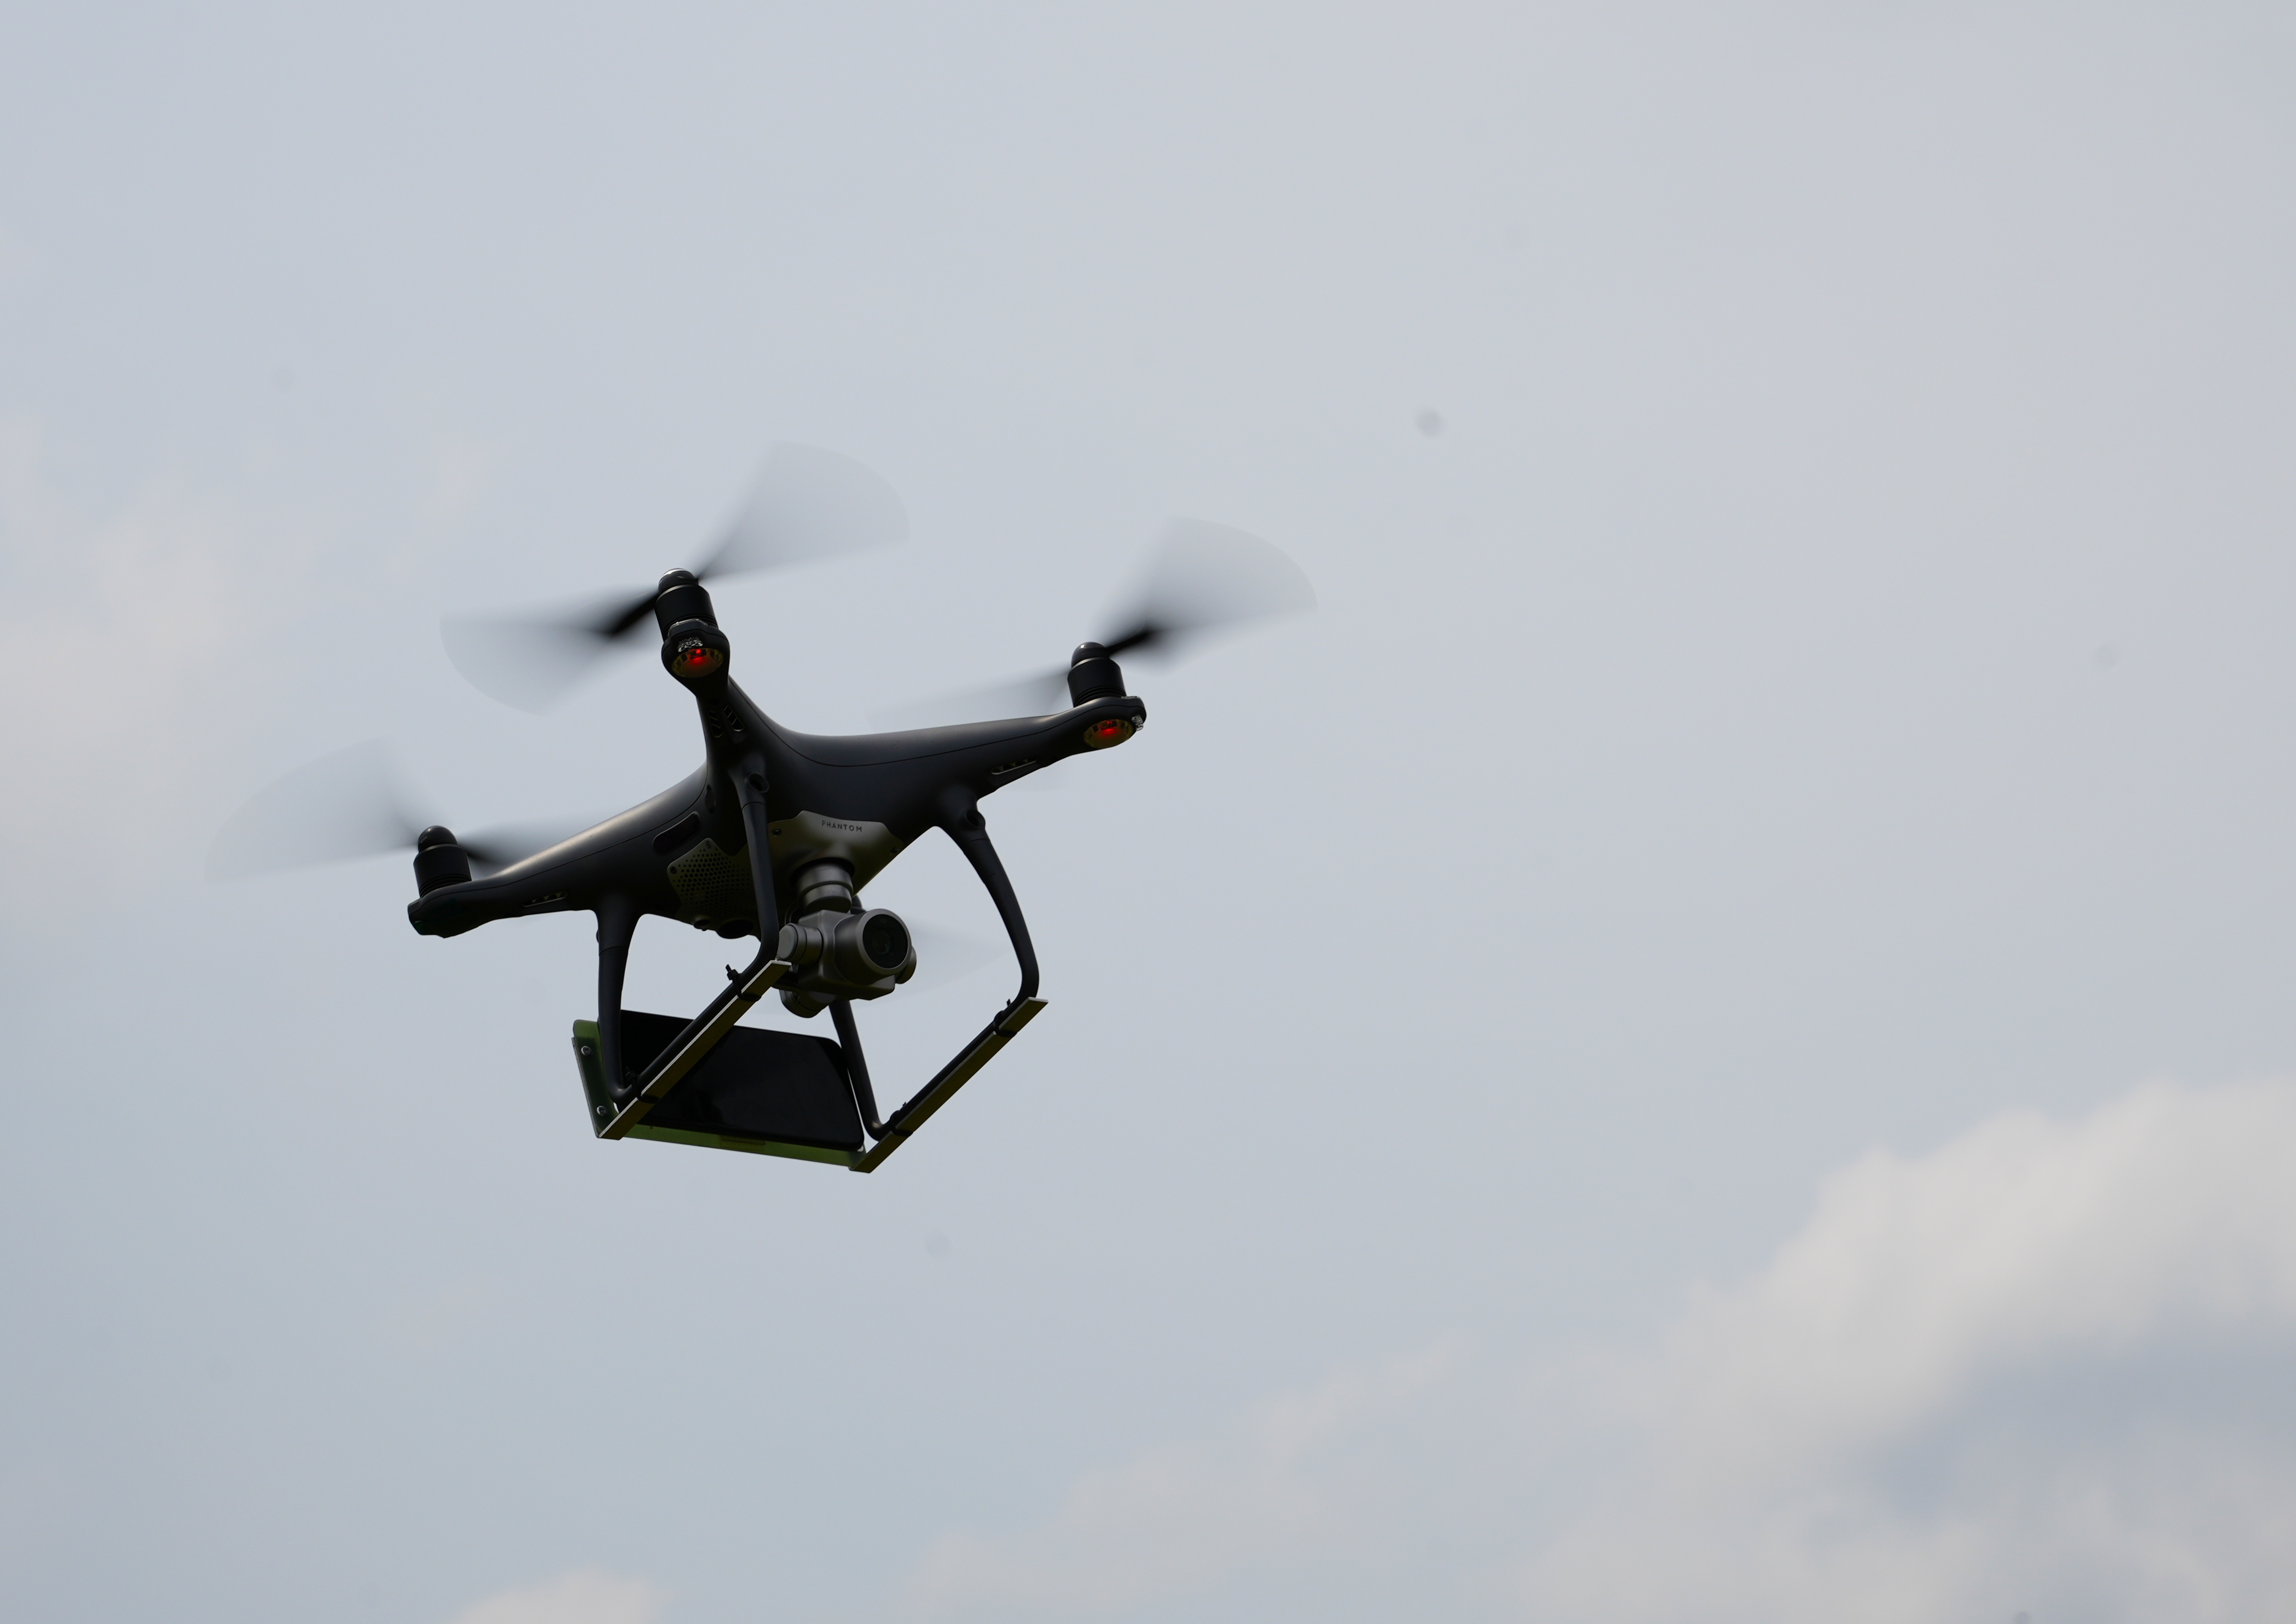 drone mid-flight in sky